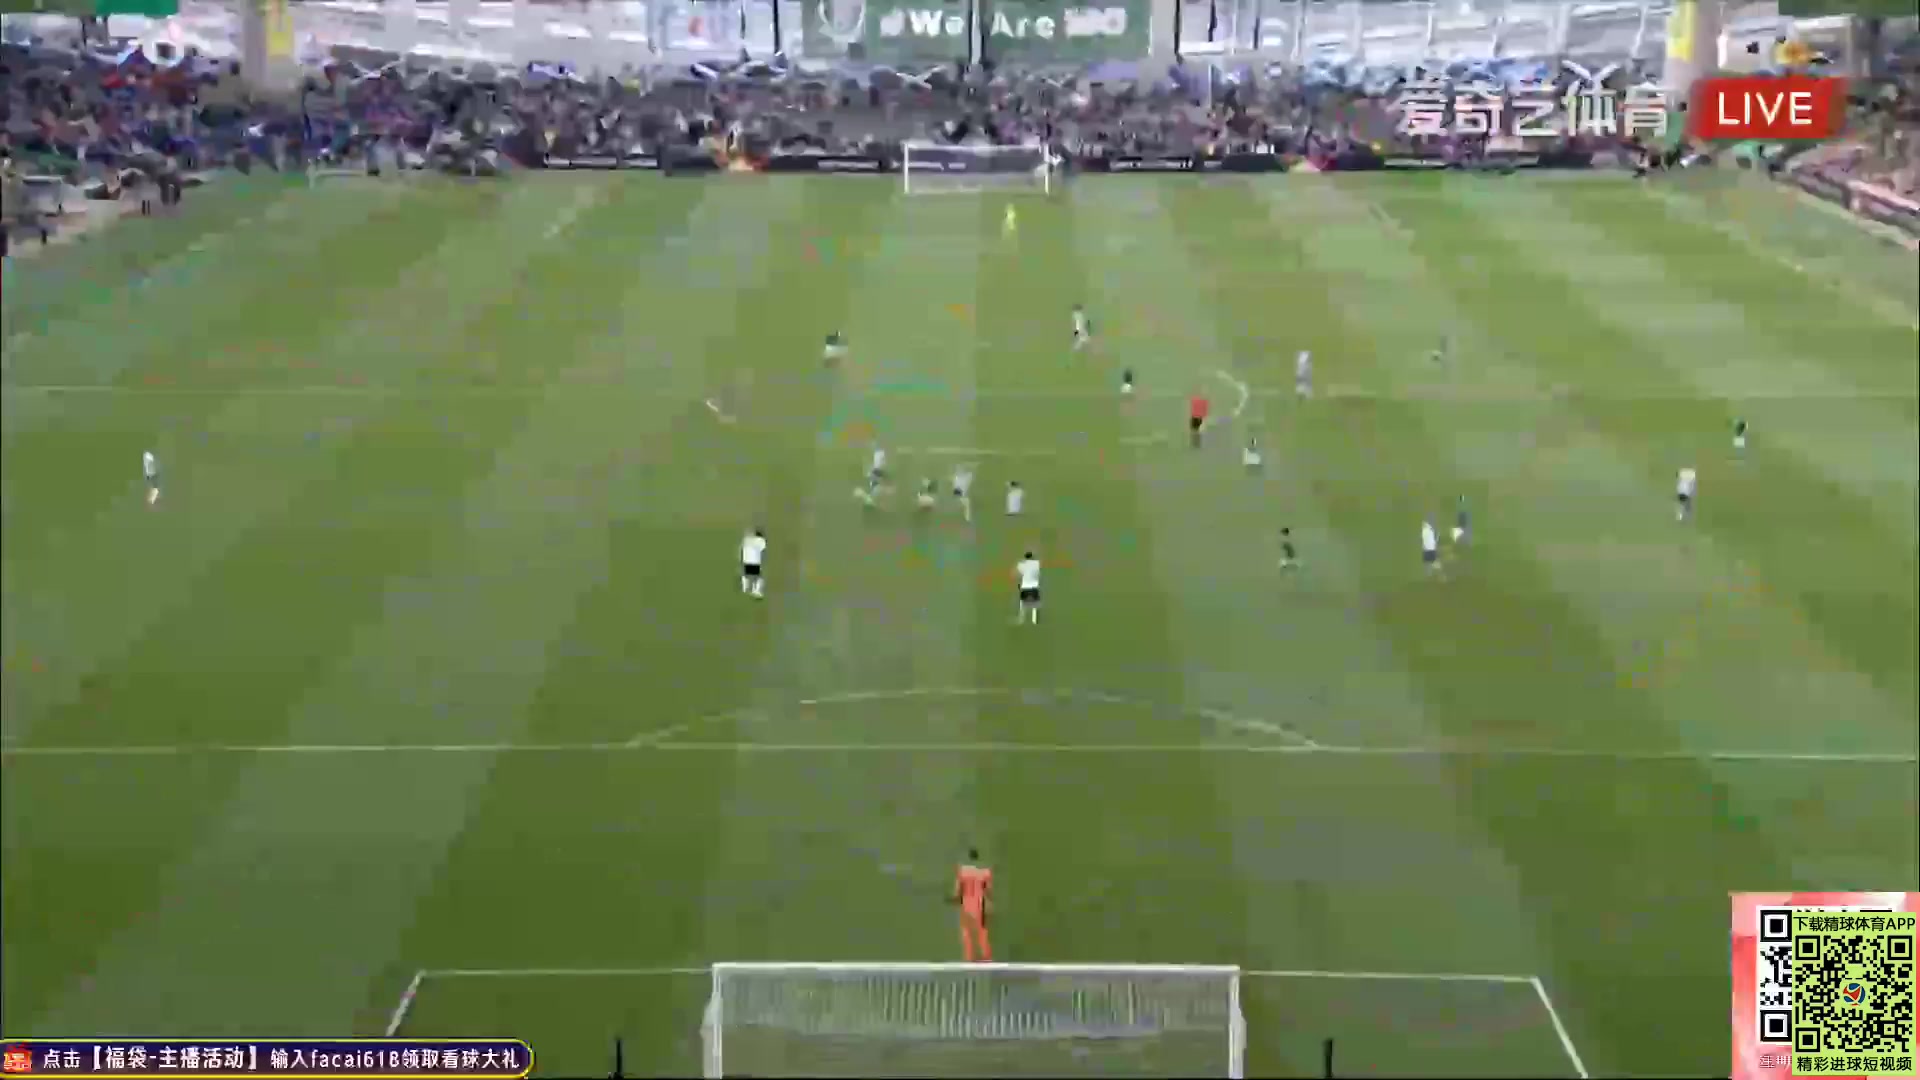 UEFA  NL Ireland Vs Scotland  Goal in 50 min, Score 3:0